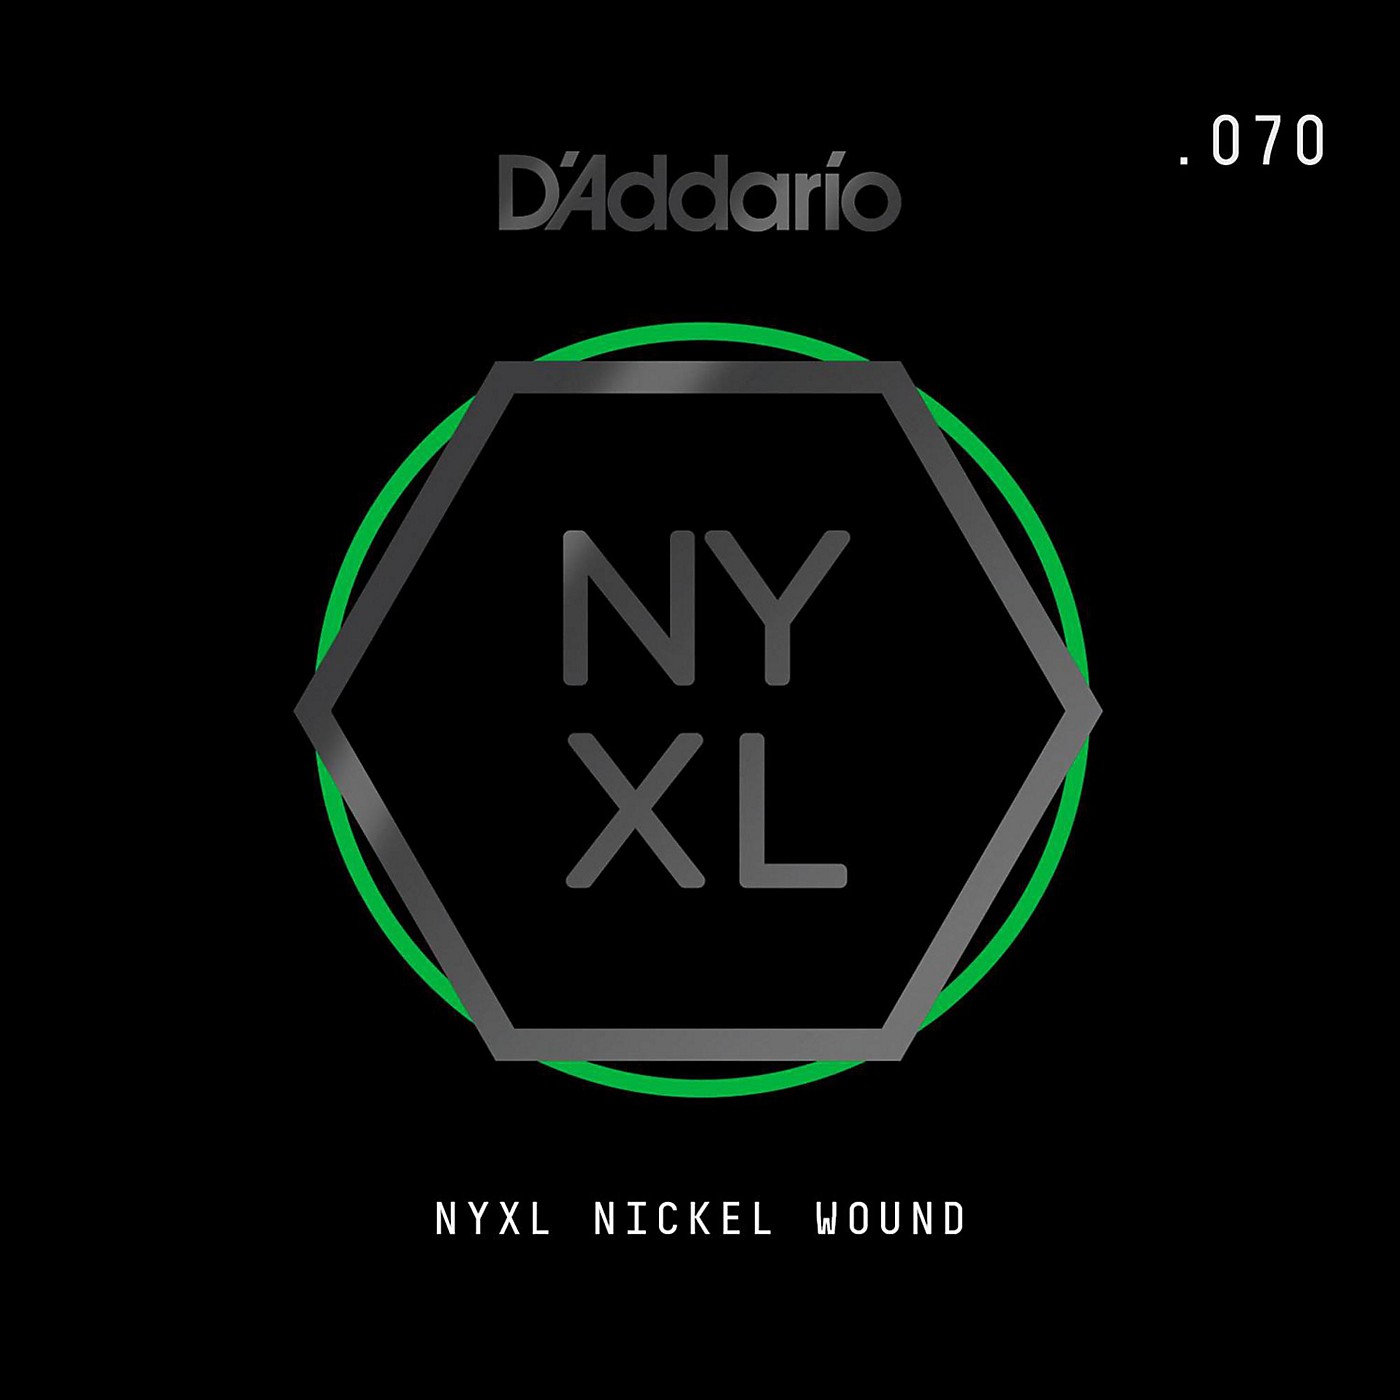 D'Addario NYNW070 NYXL Nickel Wound Electric Guitar Single String, .070 thumbnail